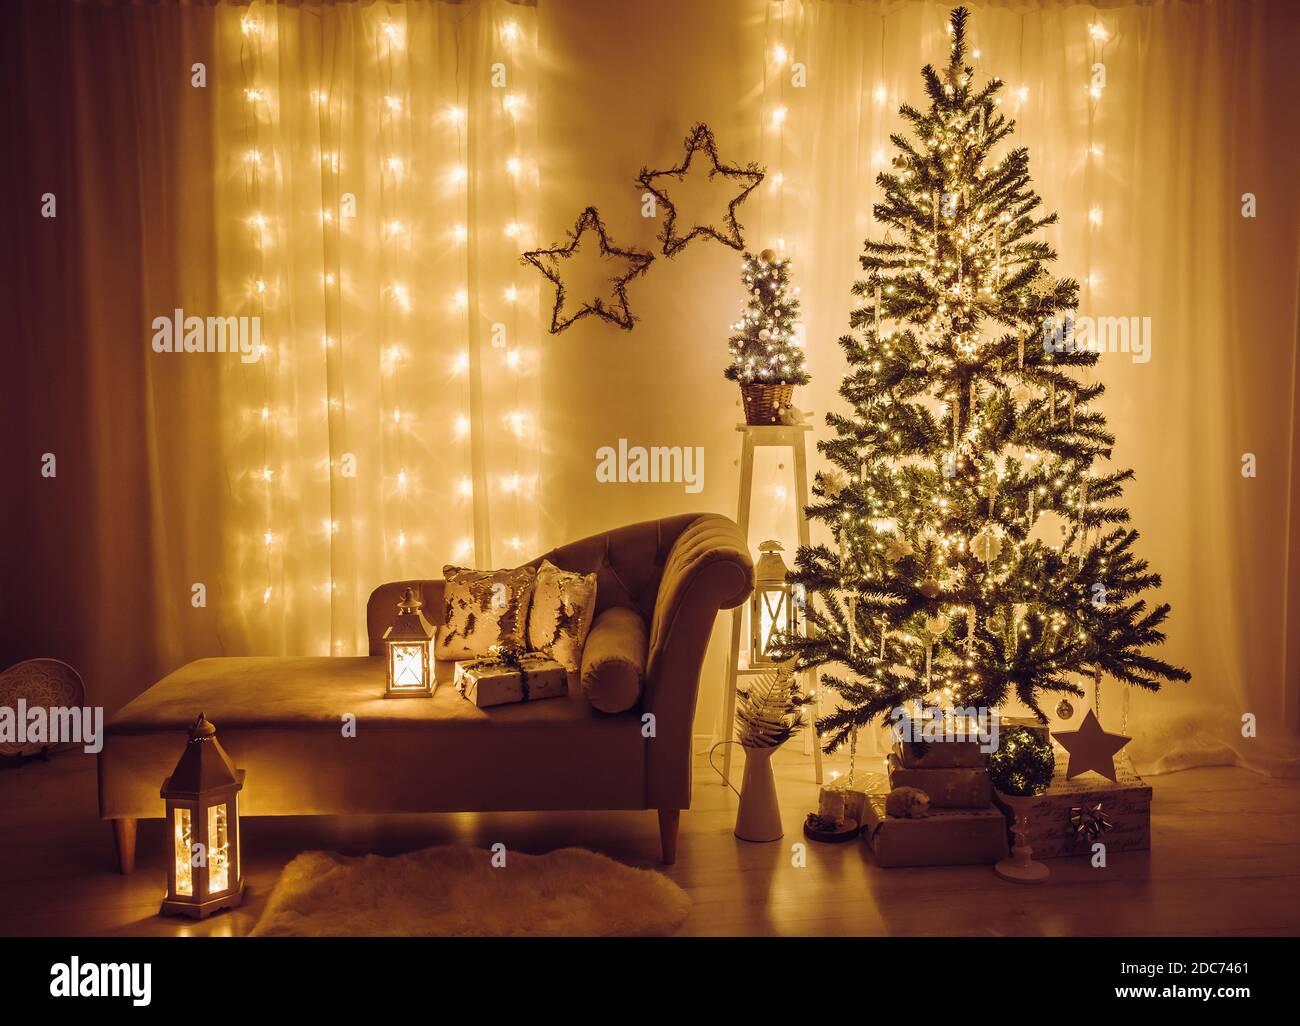 Soggiorno a casa decorato per la vigilia di Natale. Albero di abete rosso di Natale decorato con luci di festa, iciclette e fiocchi di neve, avvolti regali di Natale. Foto Stock